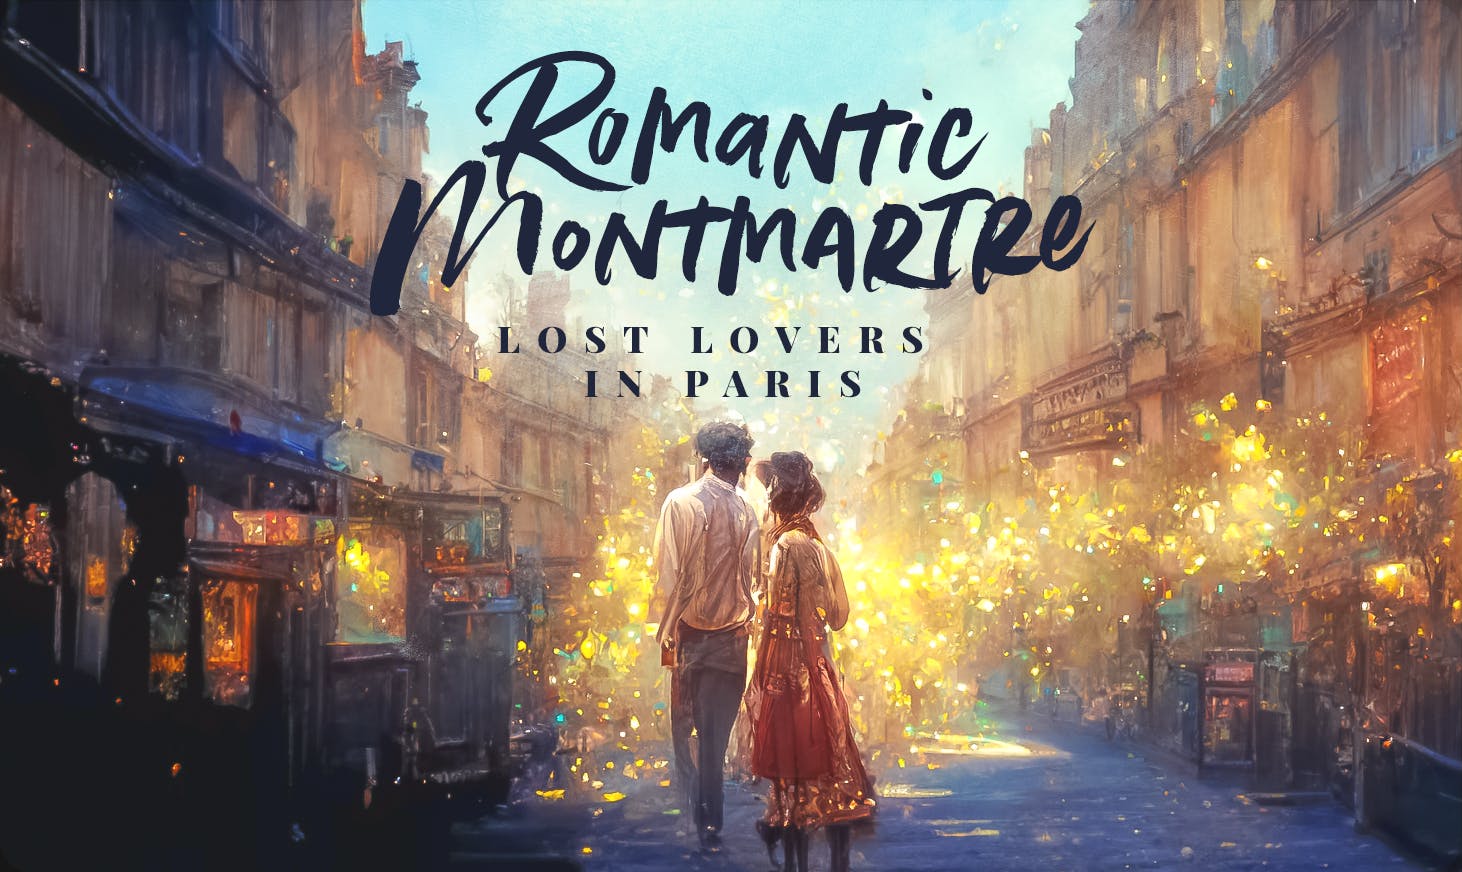 Romantyczna dzielnica Montmartre podczas gry miejskiej w Paryżu